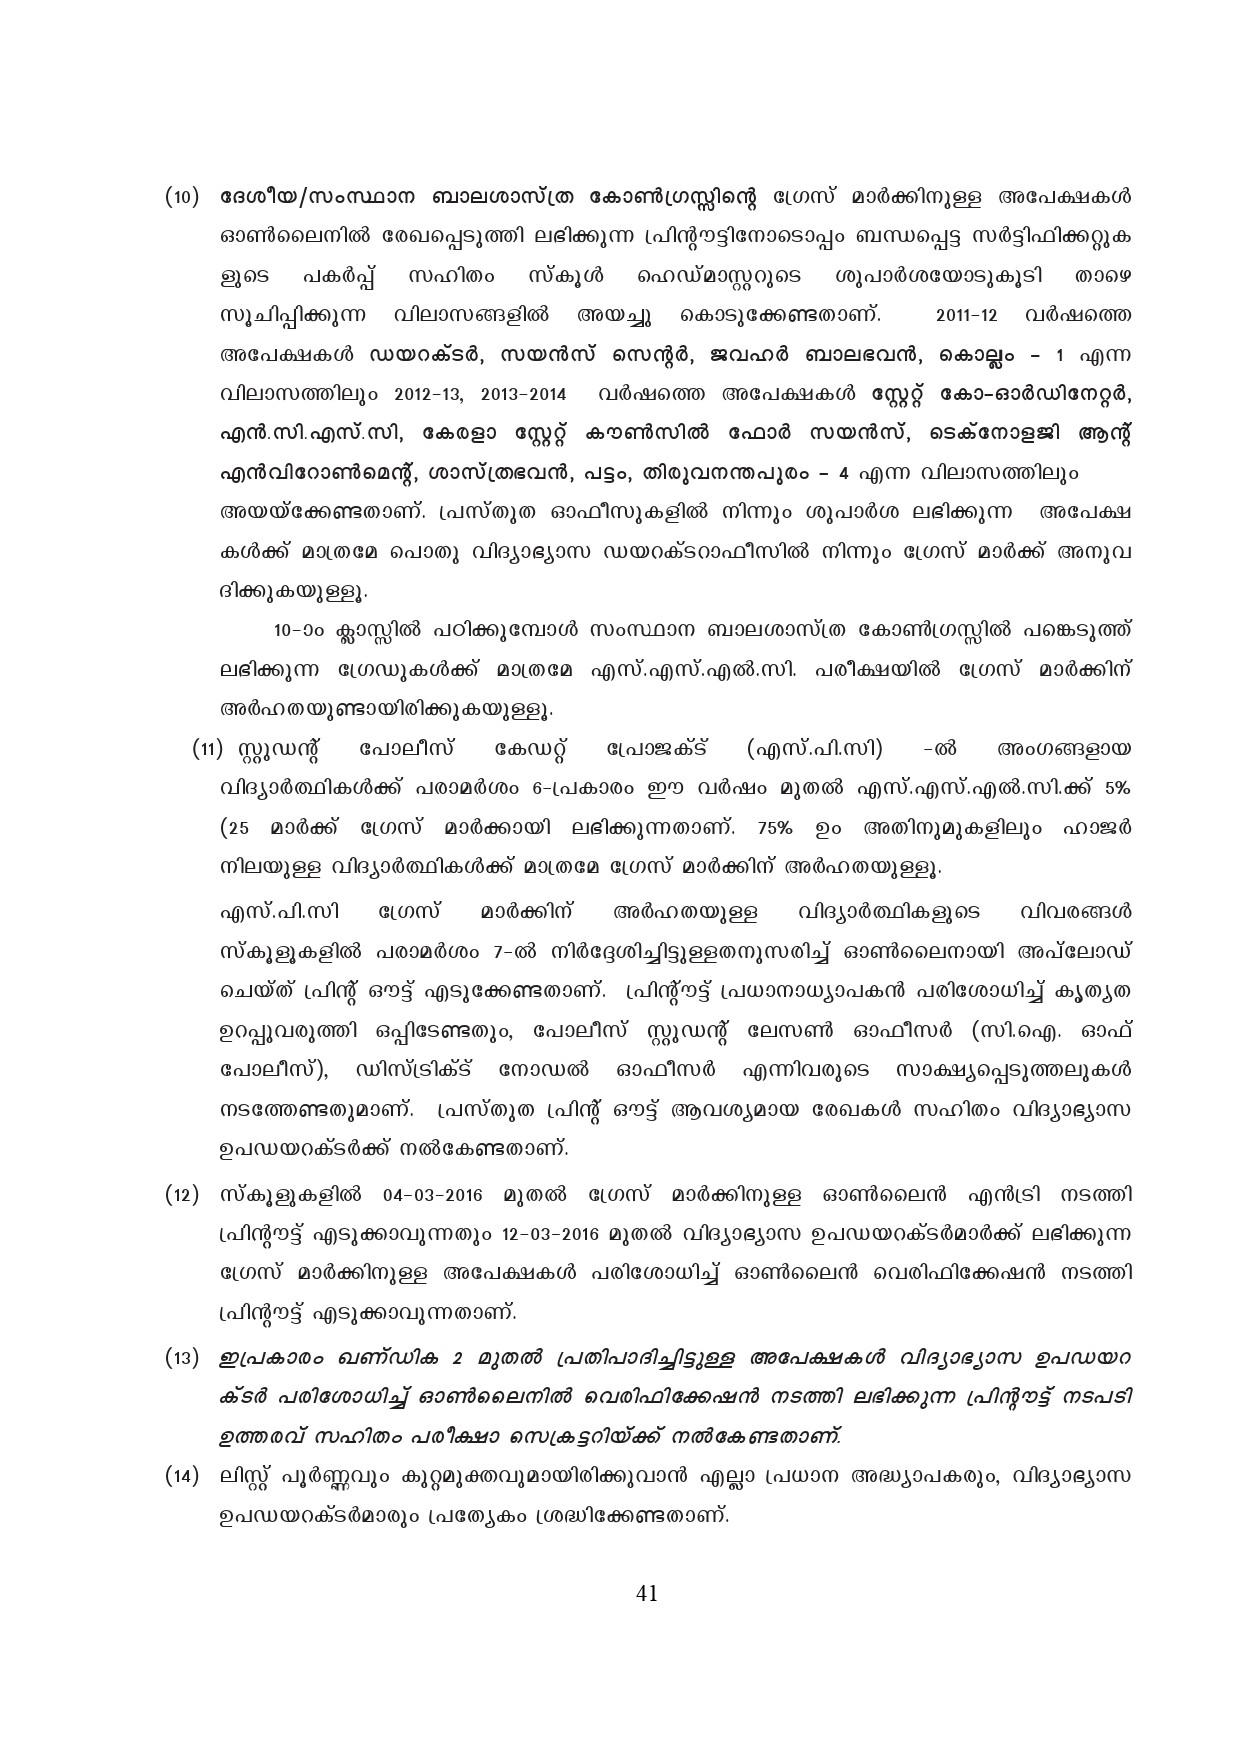 Kerala SSLC Exam Result 2019 - Notification Image 41